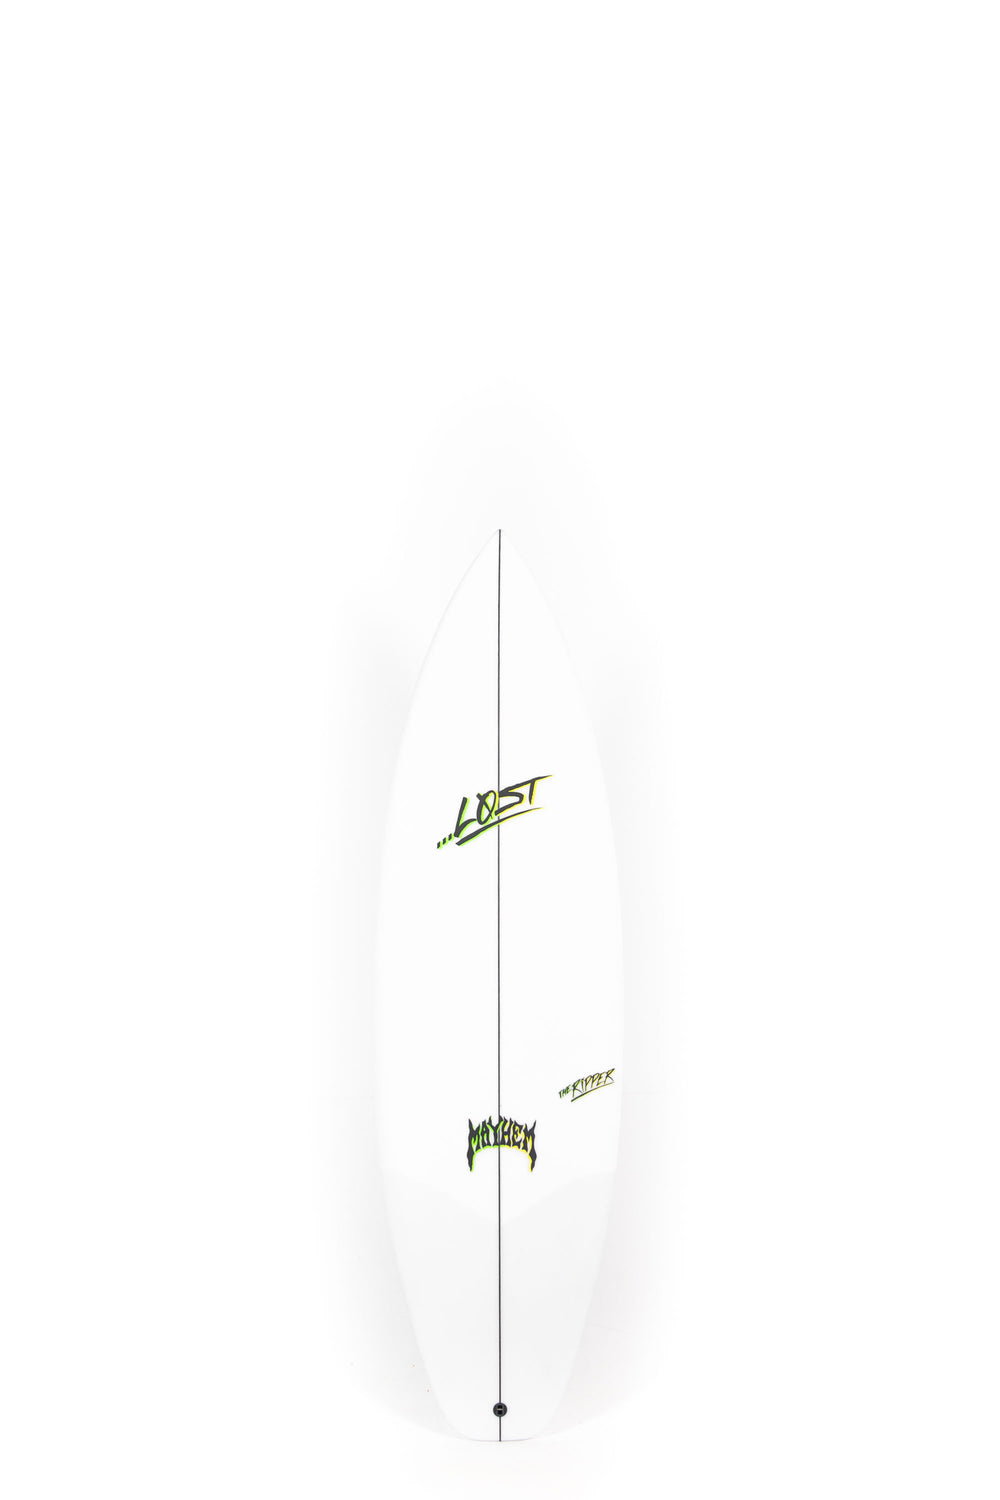 Pukas Surf Shop - Lost Surfboard - THE RIPPER by Matt Biolos - 5'8